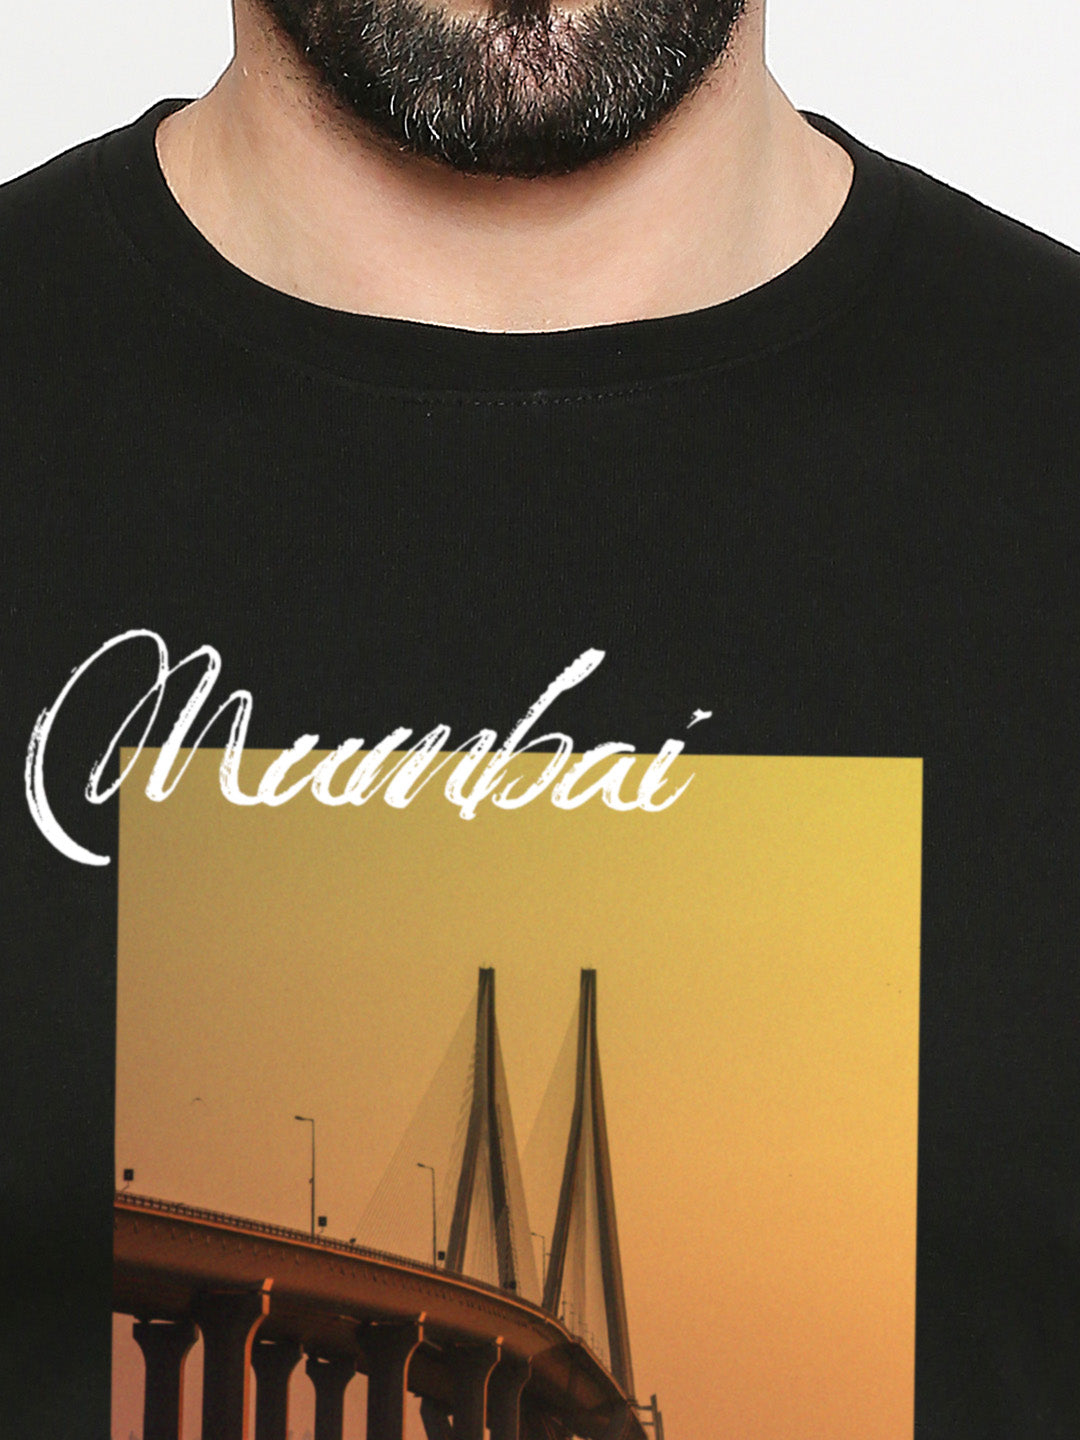 Mumbai City of Dreams T-Shirt